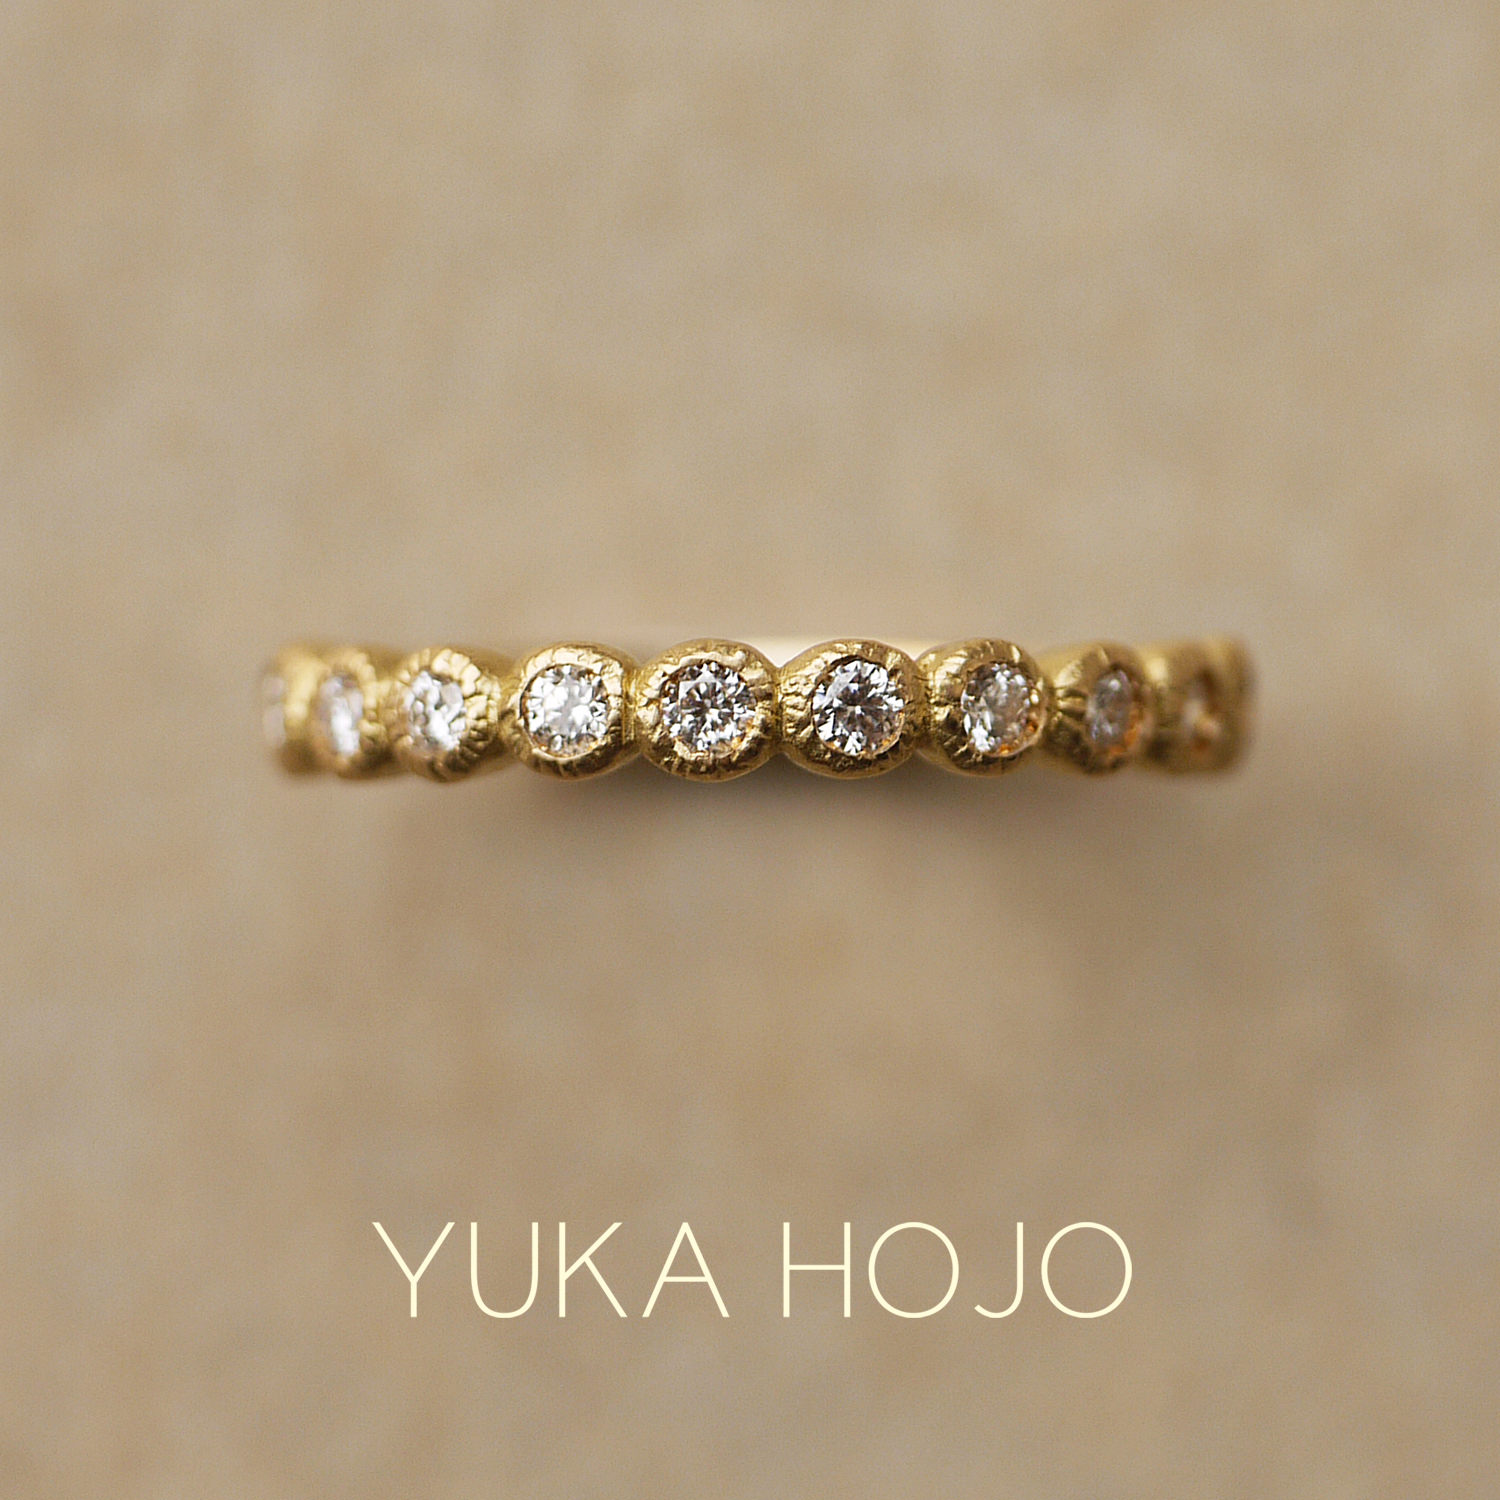 YUKA HOJOユカホウジョウの婚約指輪でエンゲージリング・結婚指輪でマリッジリングのエタニティリングBloomブルーム